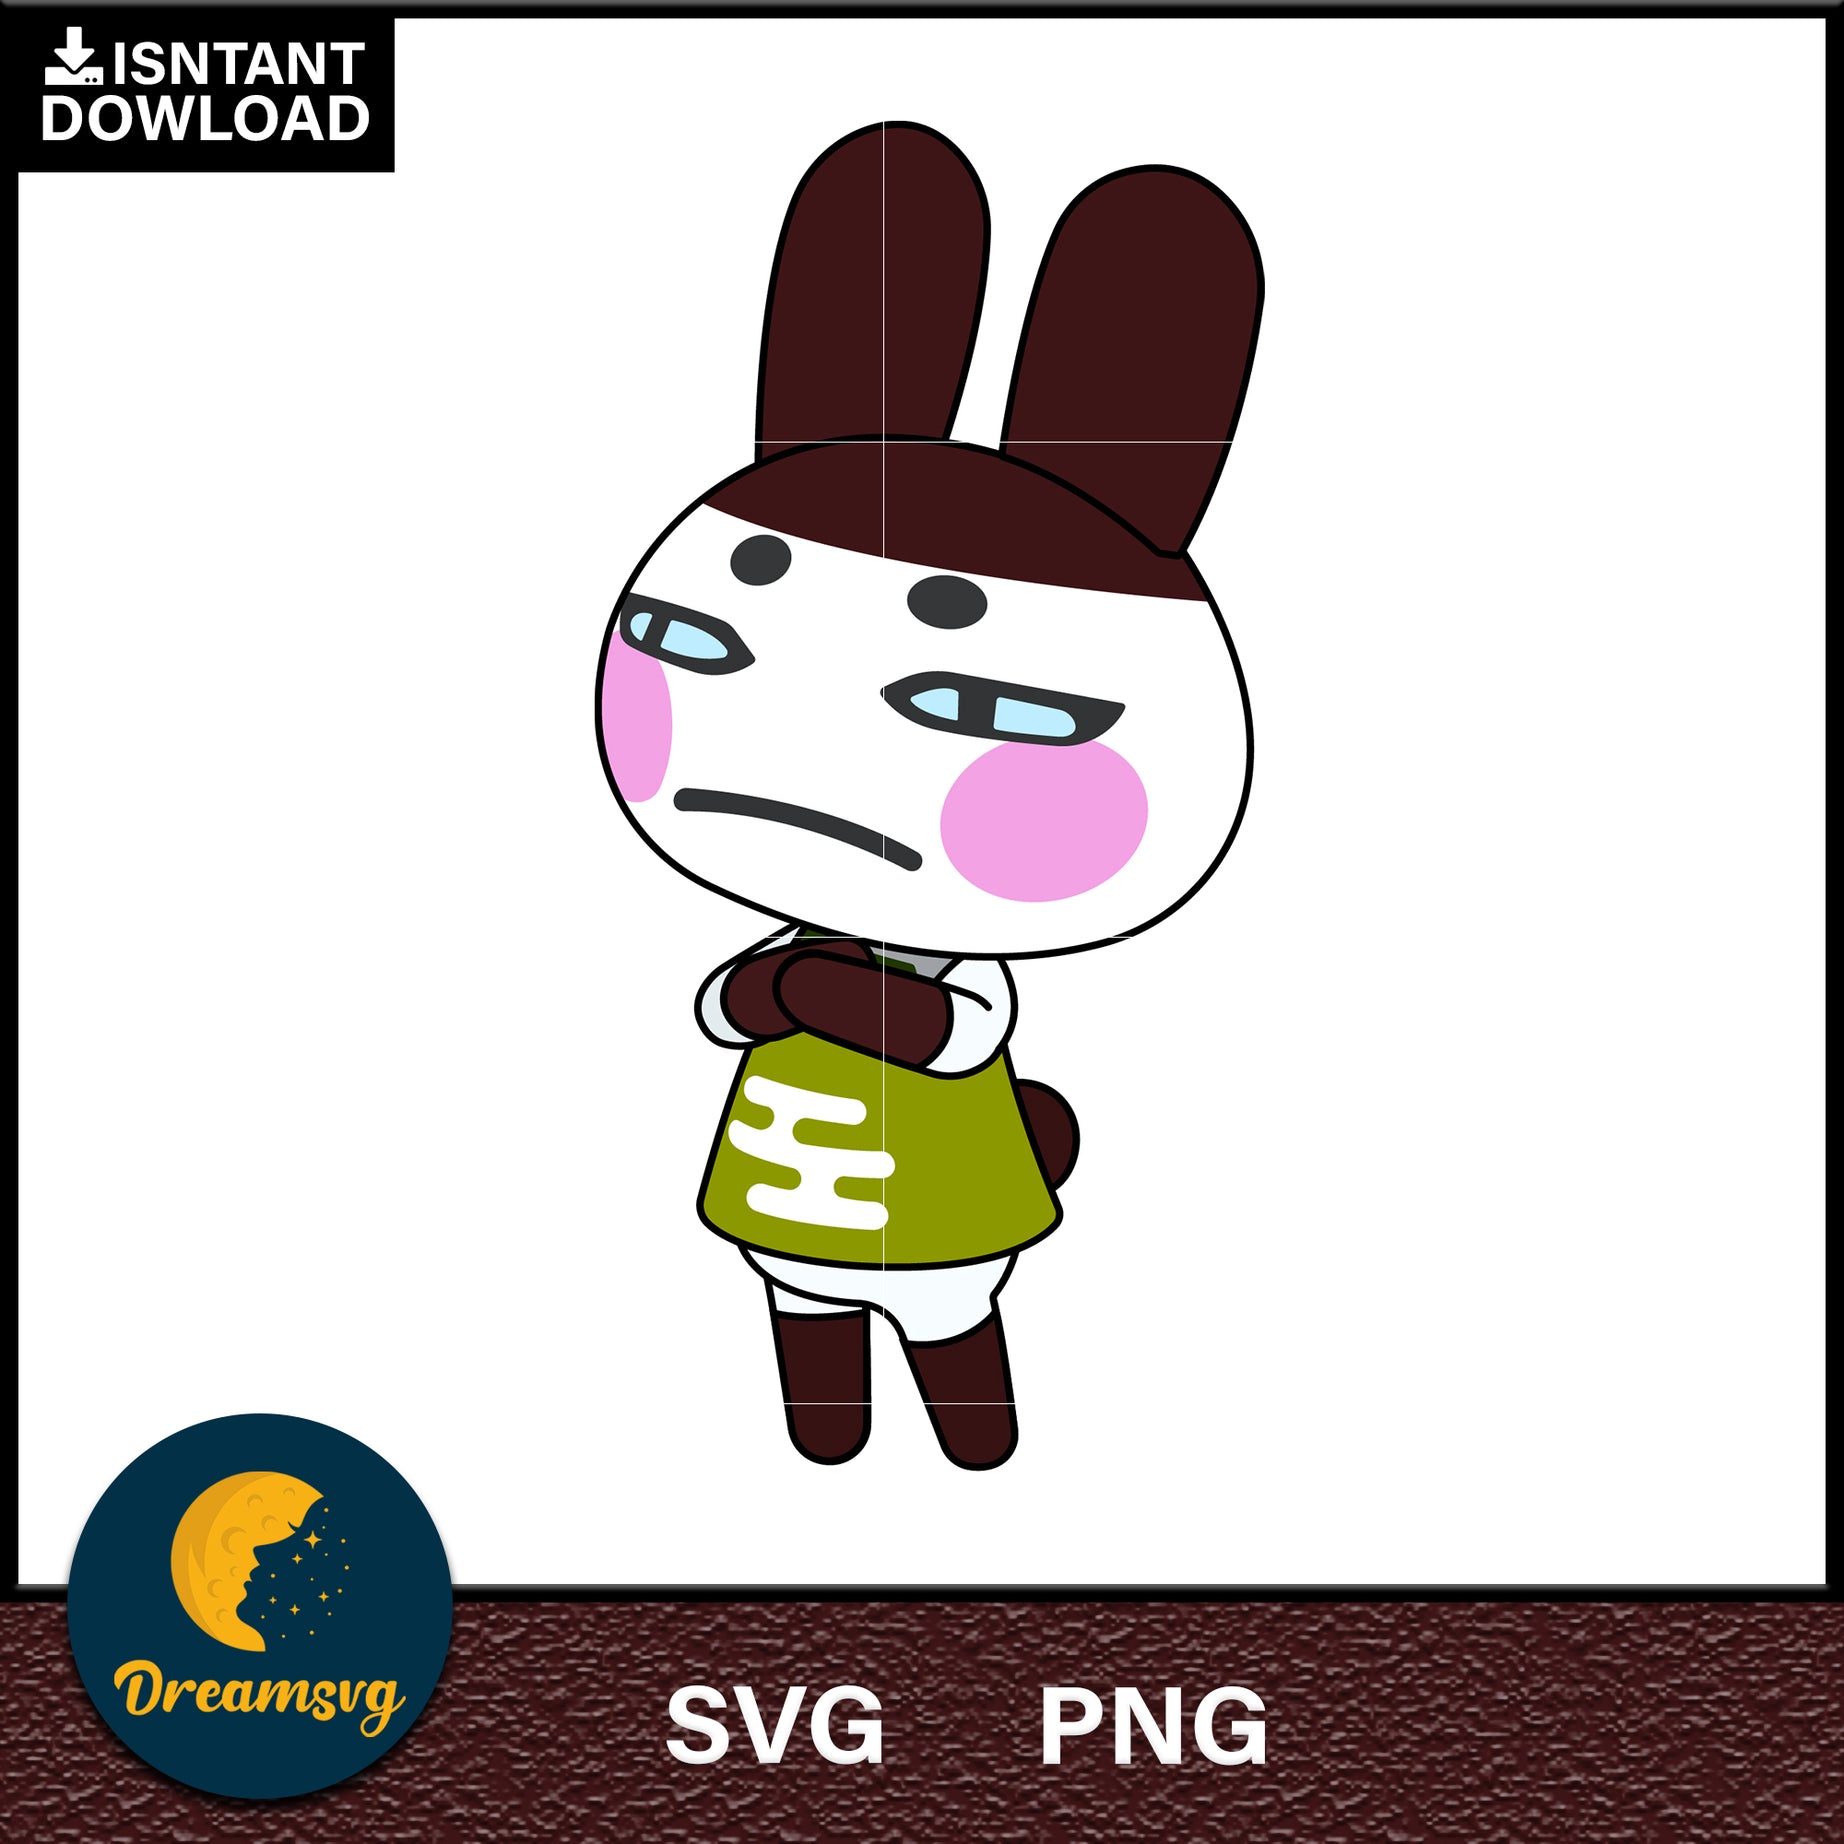 Genji Animal Crossing Svg, Animal Crossing Svg, Animal Crossing Png, Cartoon svg, svg, png digital file